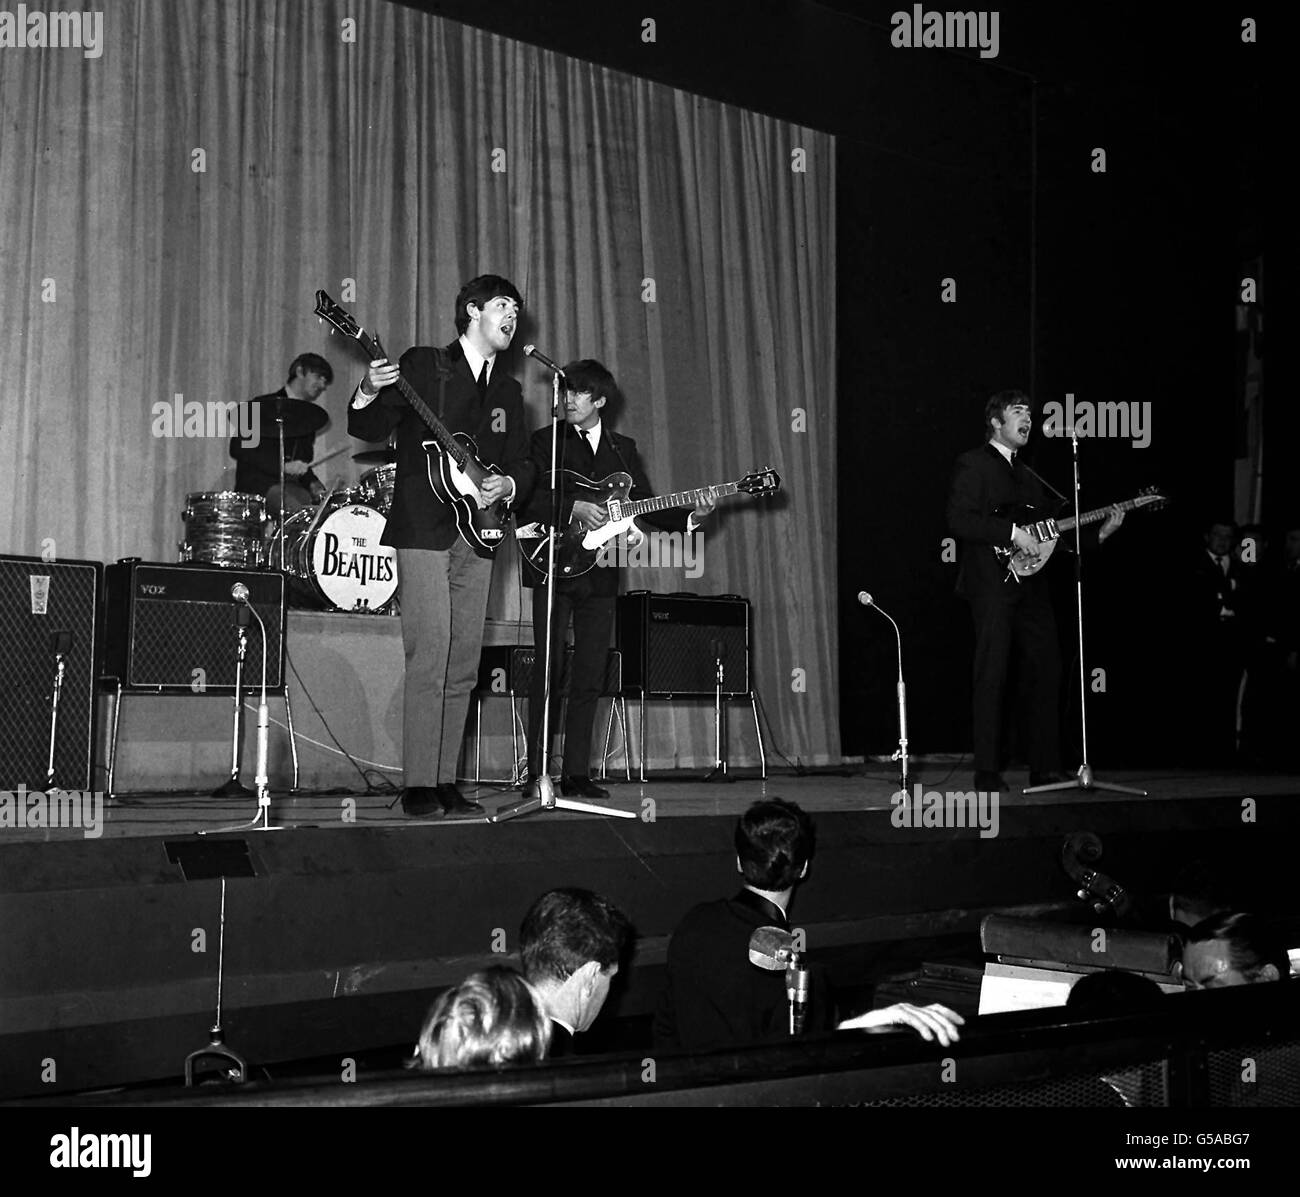 THE BEATLES 1963 : les Beatles répétitions pour la Royal Variety Performance 1963 au Prince of Wales Theatre de Londres.(De gauche à droite) Ringo Starr, Paul McCartney, George Harrison et John Lennon. Banque D'Images